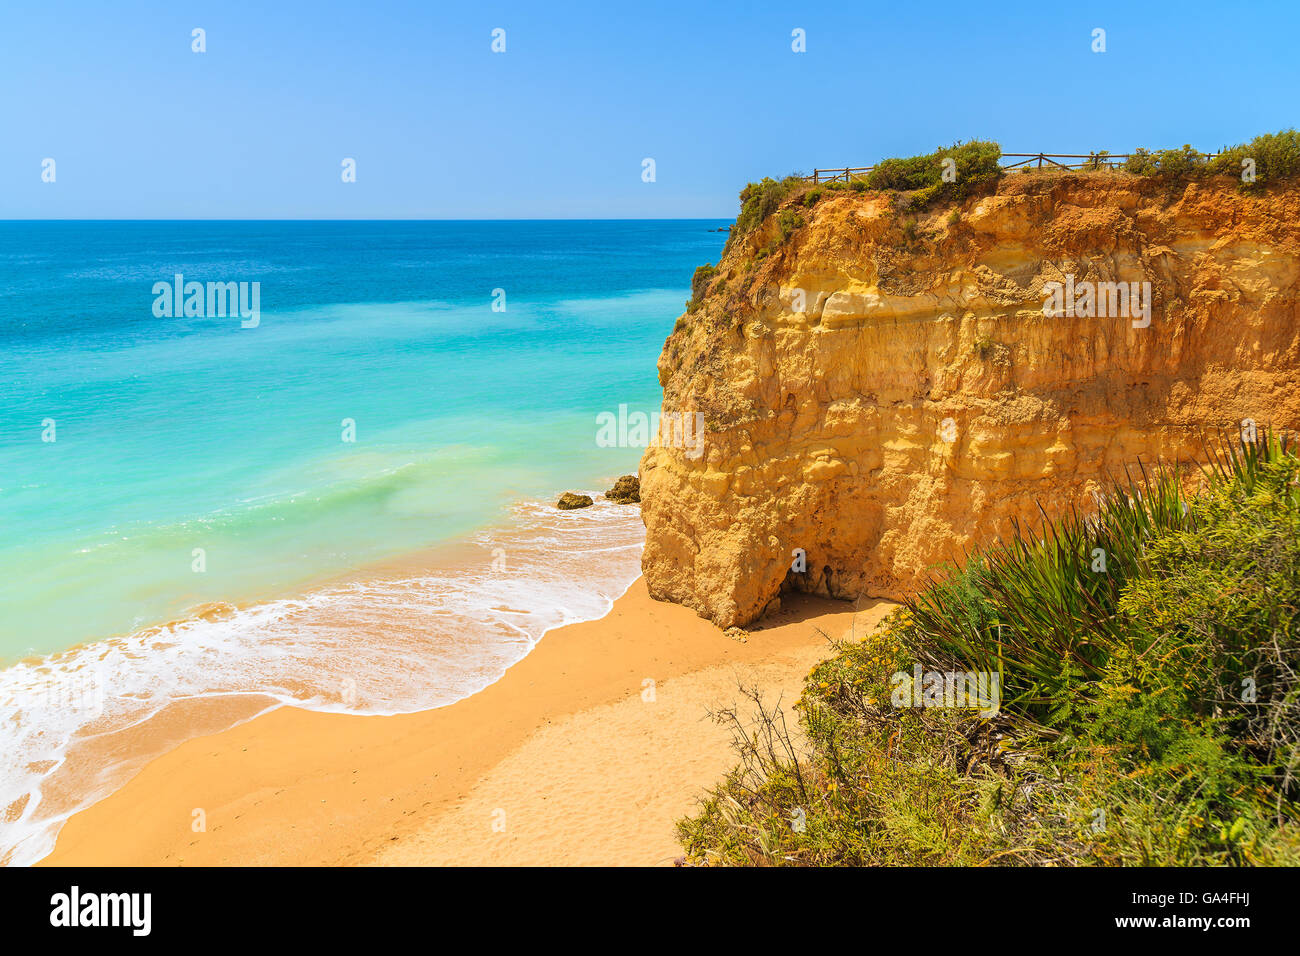 Plage de sable avec rochers falaise sur la magnifique plage de Praia da Rocha, Algarve, Portugal Banque D'Images